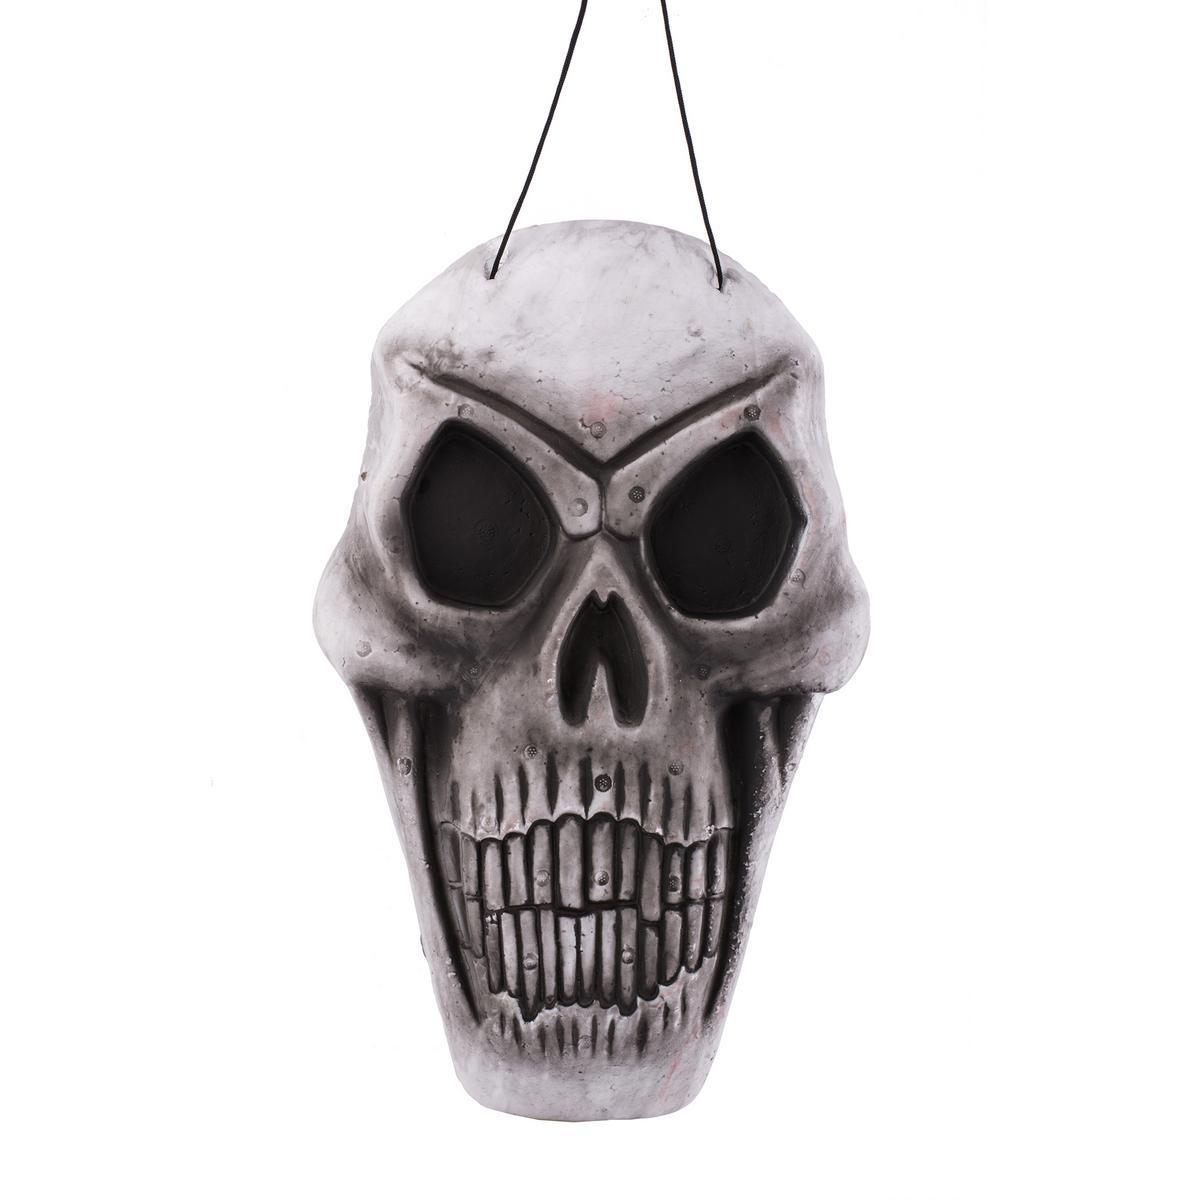 Décoration crâne Halloween - 2,8 x 23 x H 38 cm - Polystyrène - Différents modèles